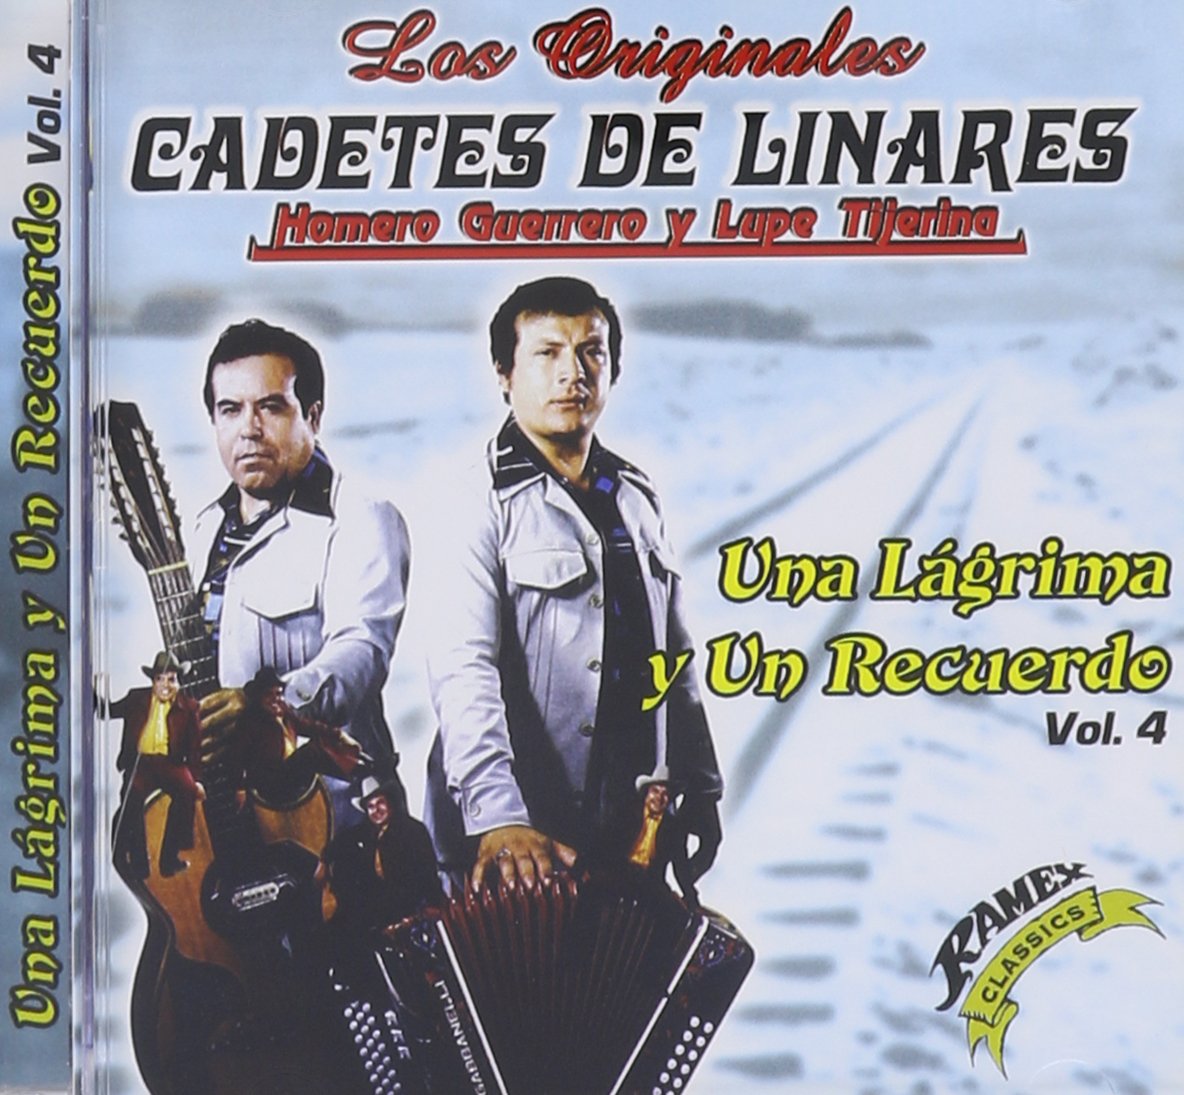 Los Cadetes De Linares - Una Lagrima Y Un Recuerdo Vol. 4 (CD)